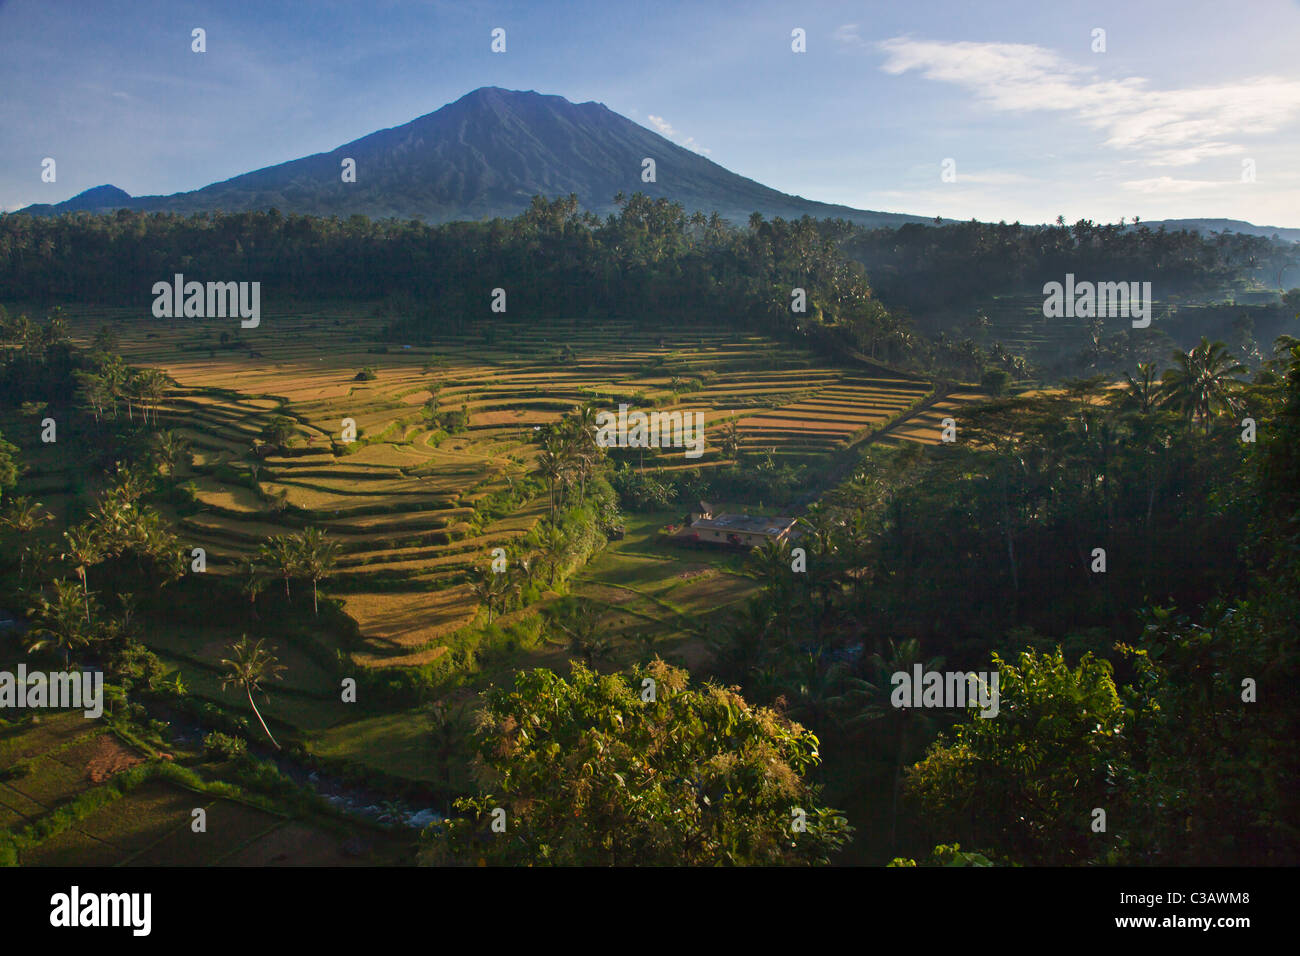 Le MAHAGIRI RIZIÈRES grâce les pentes du Gunung Agung sacré les îles plus haut pic volcanique - BALI, INDONÉSIE Banque D'Images